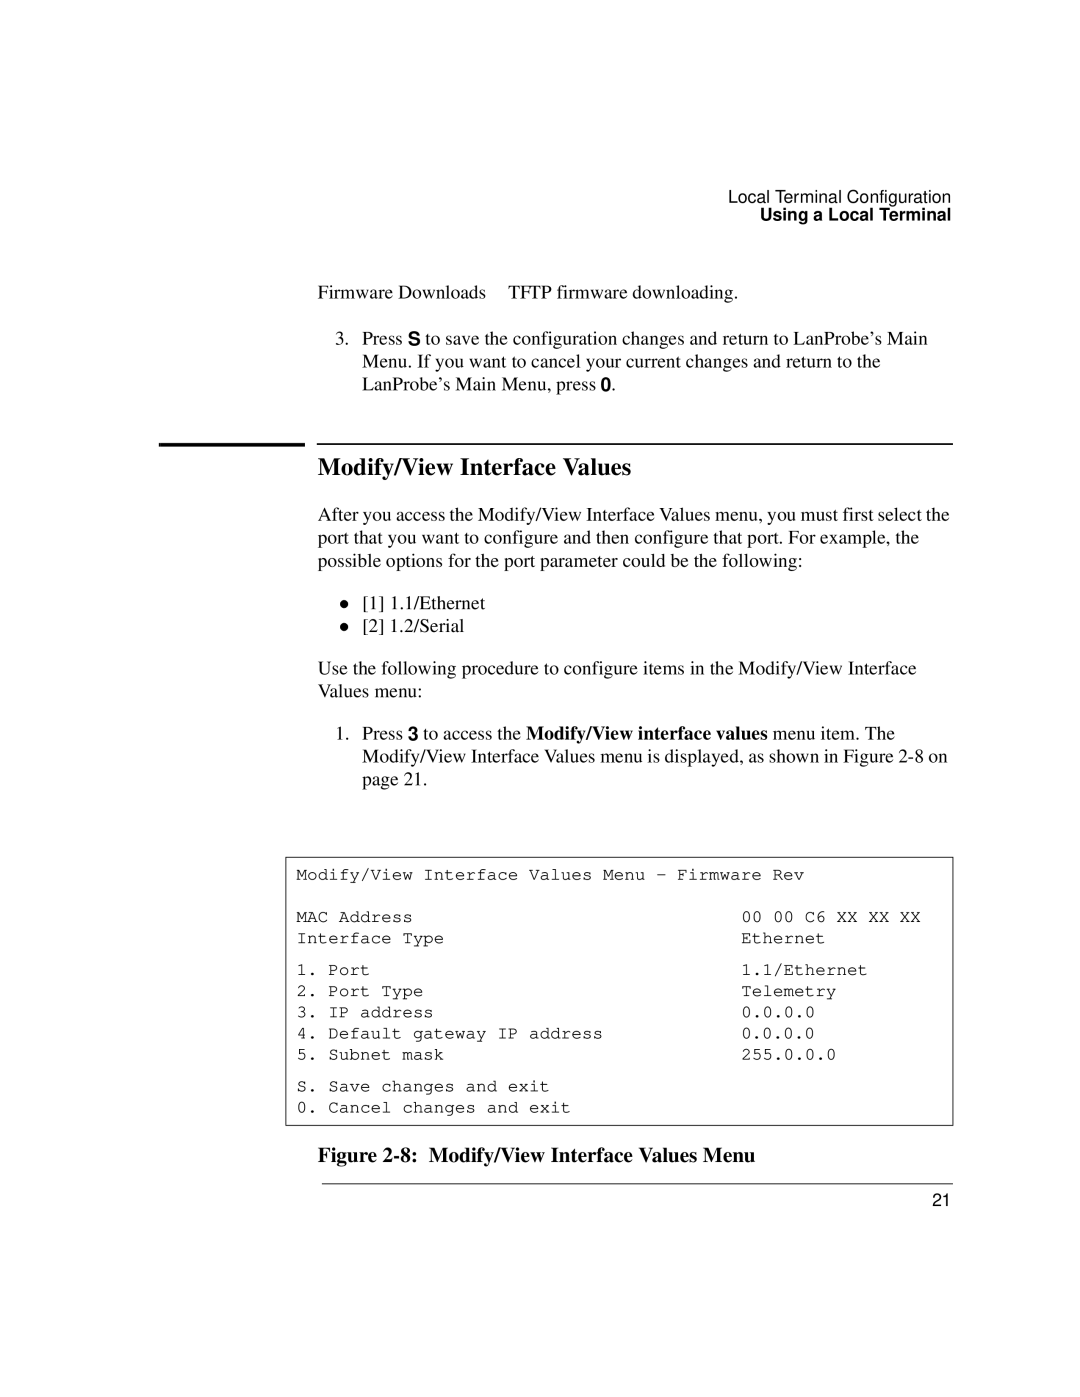 IBM 4986B LanProbe manual 8 Modify/View Interface Values Menu 